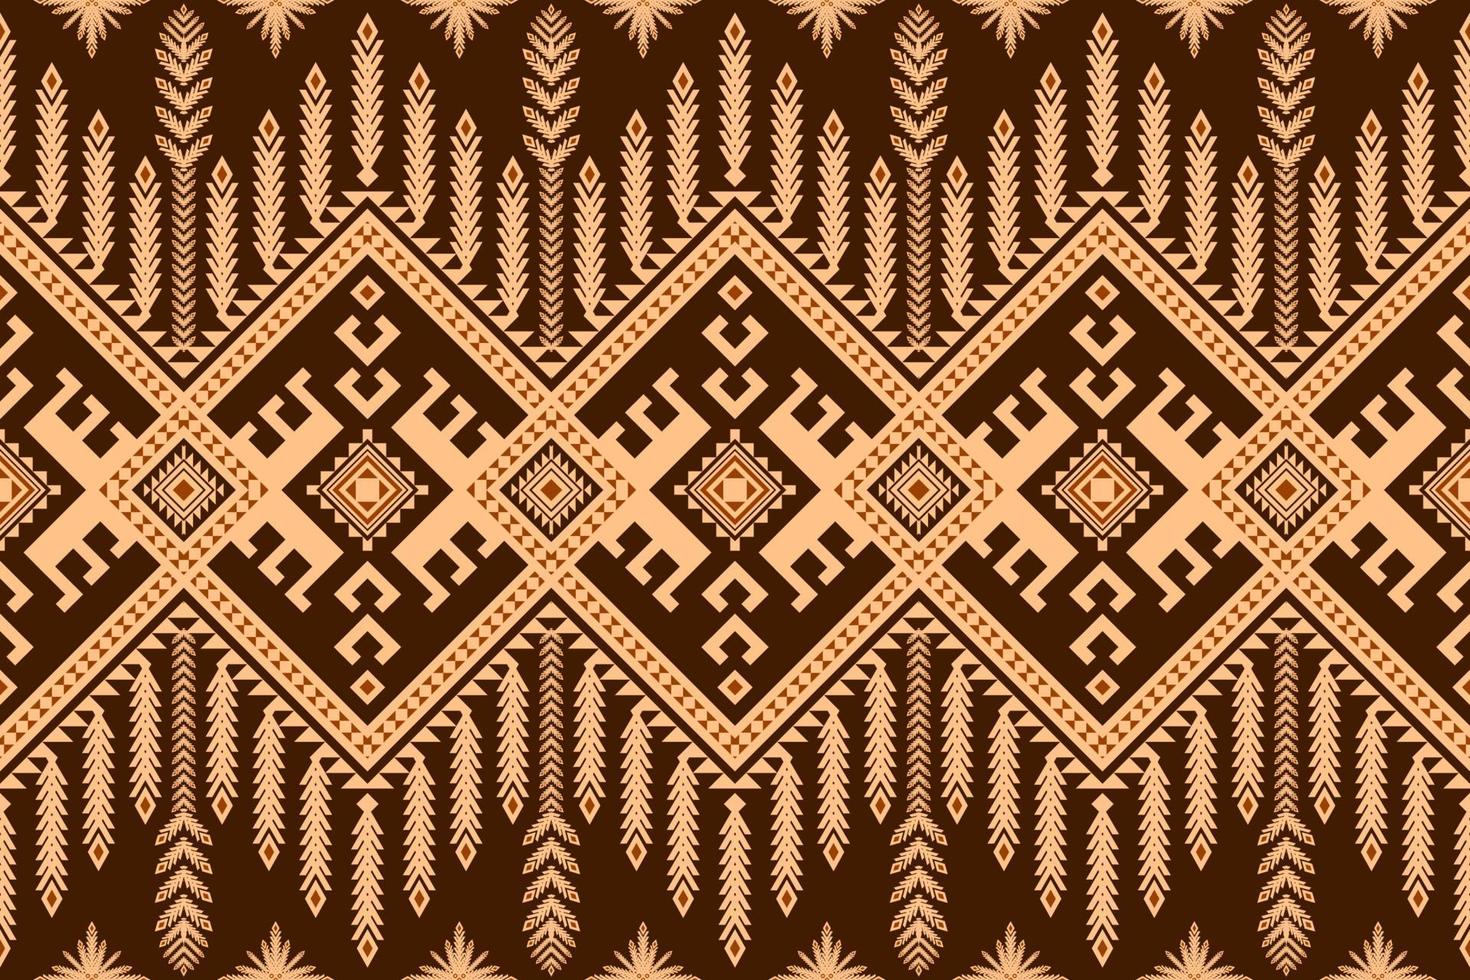 abstracte etnische geometrische patroon,afdrukken,grens,traditie,etnische oosterse naadloze bloemmotief,illustratie,gemetrisch etnische oosterse ikat patroon traditionele vector